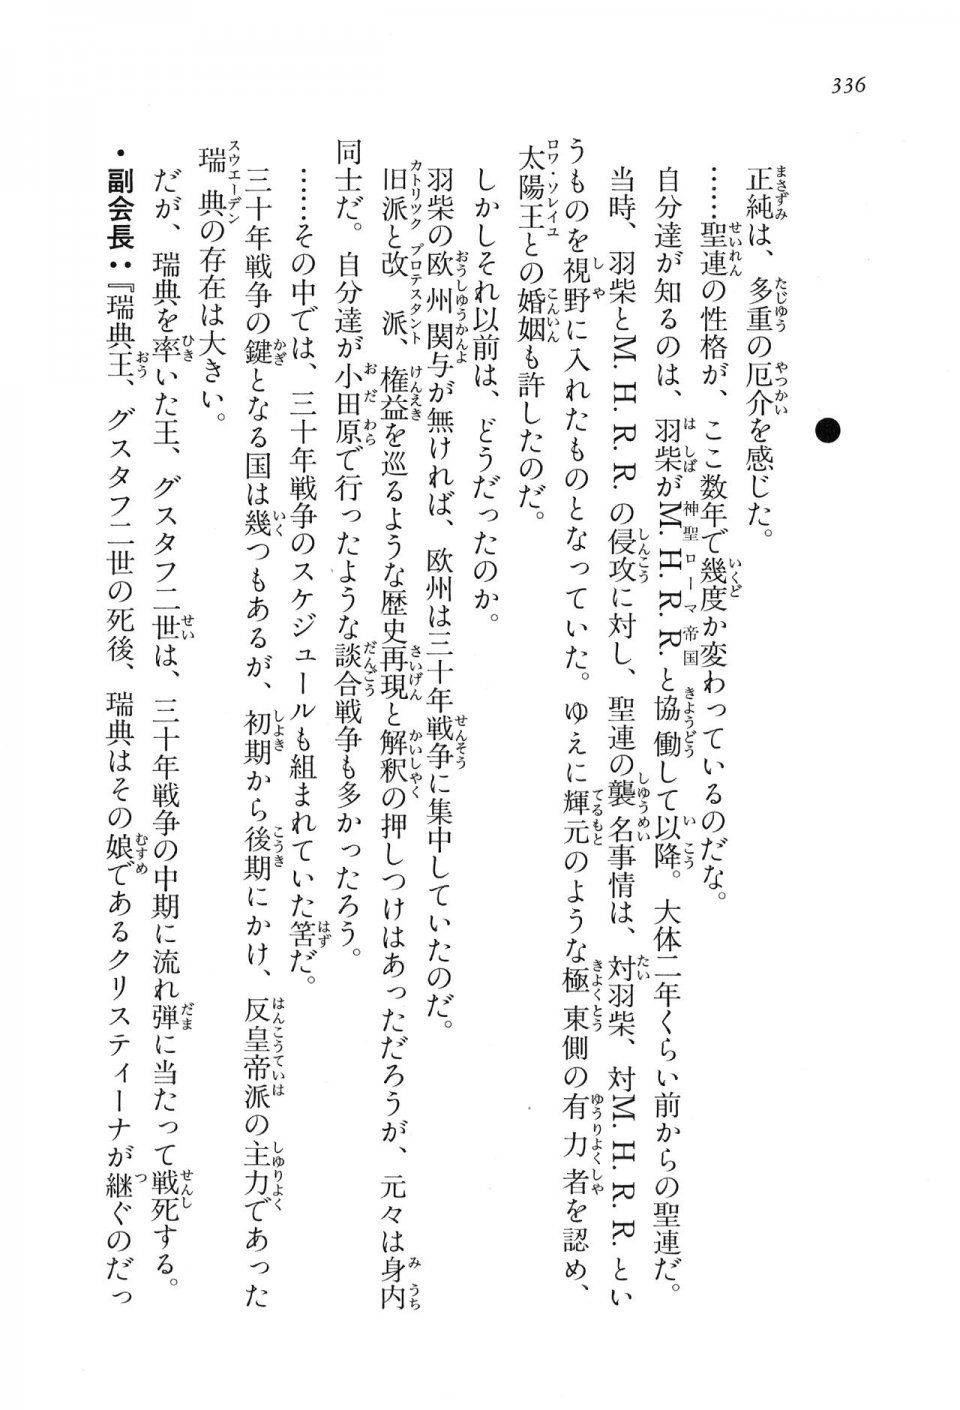 Kyoukai Senjou no Horizon LN Vol 16(7A) - Photo #336